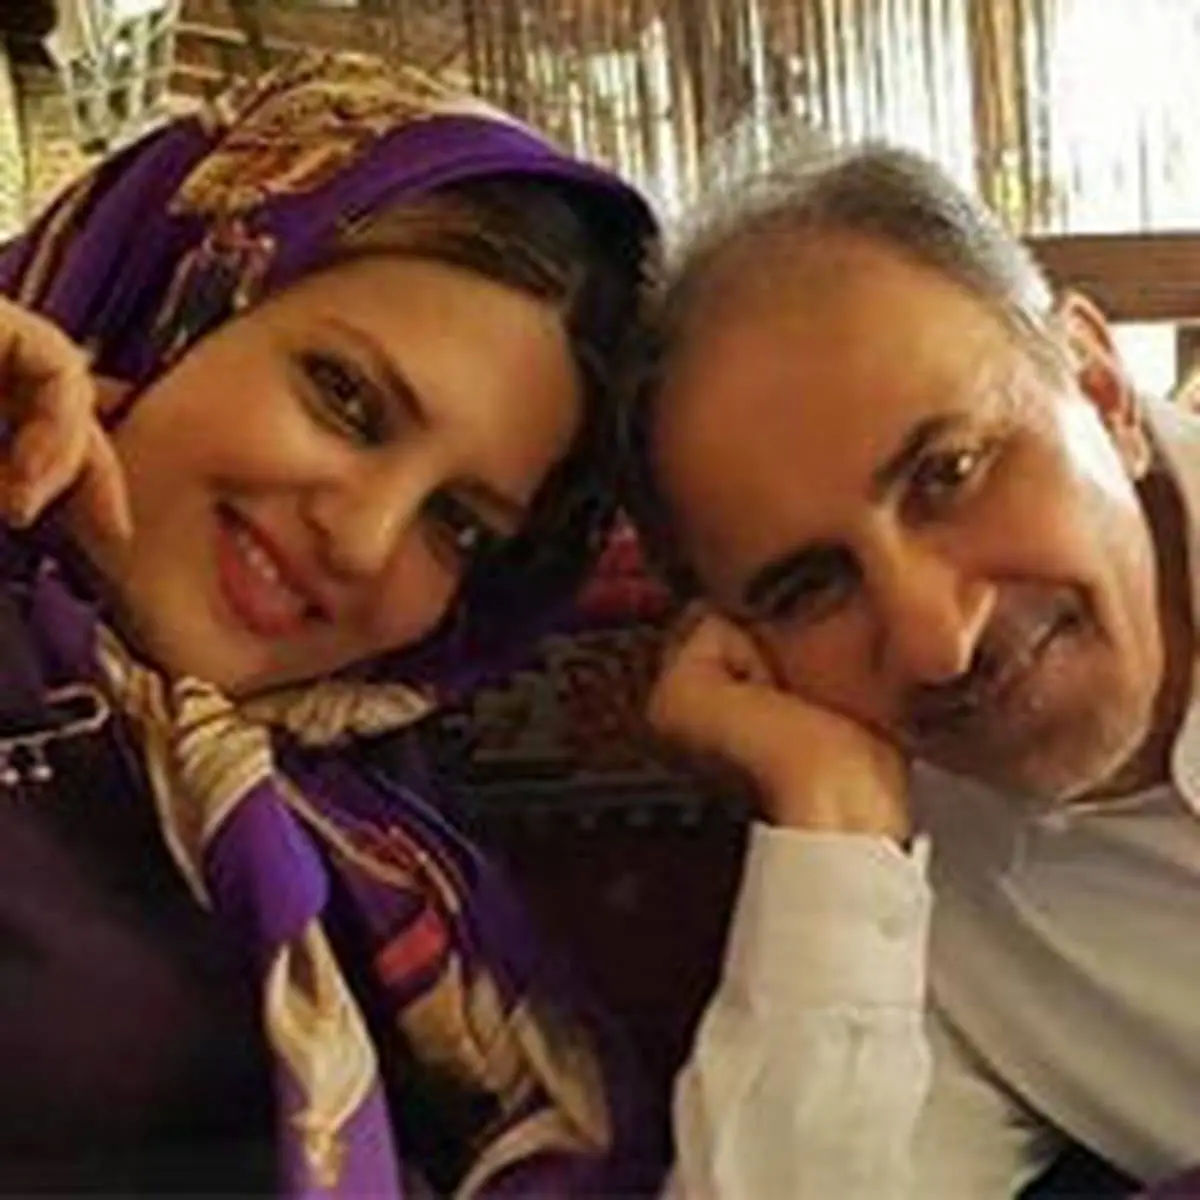 جزئیات جدید از قتل همسر دوم  شهردار تهران